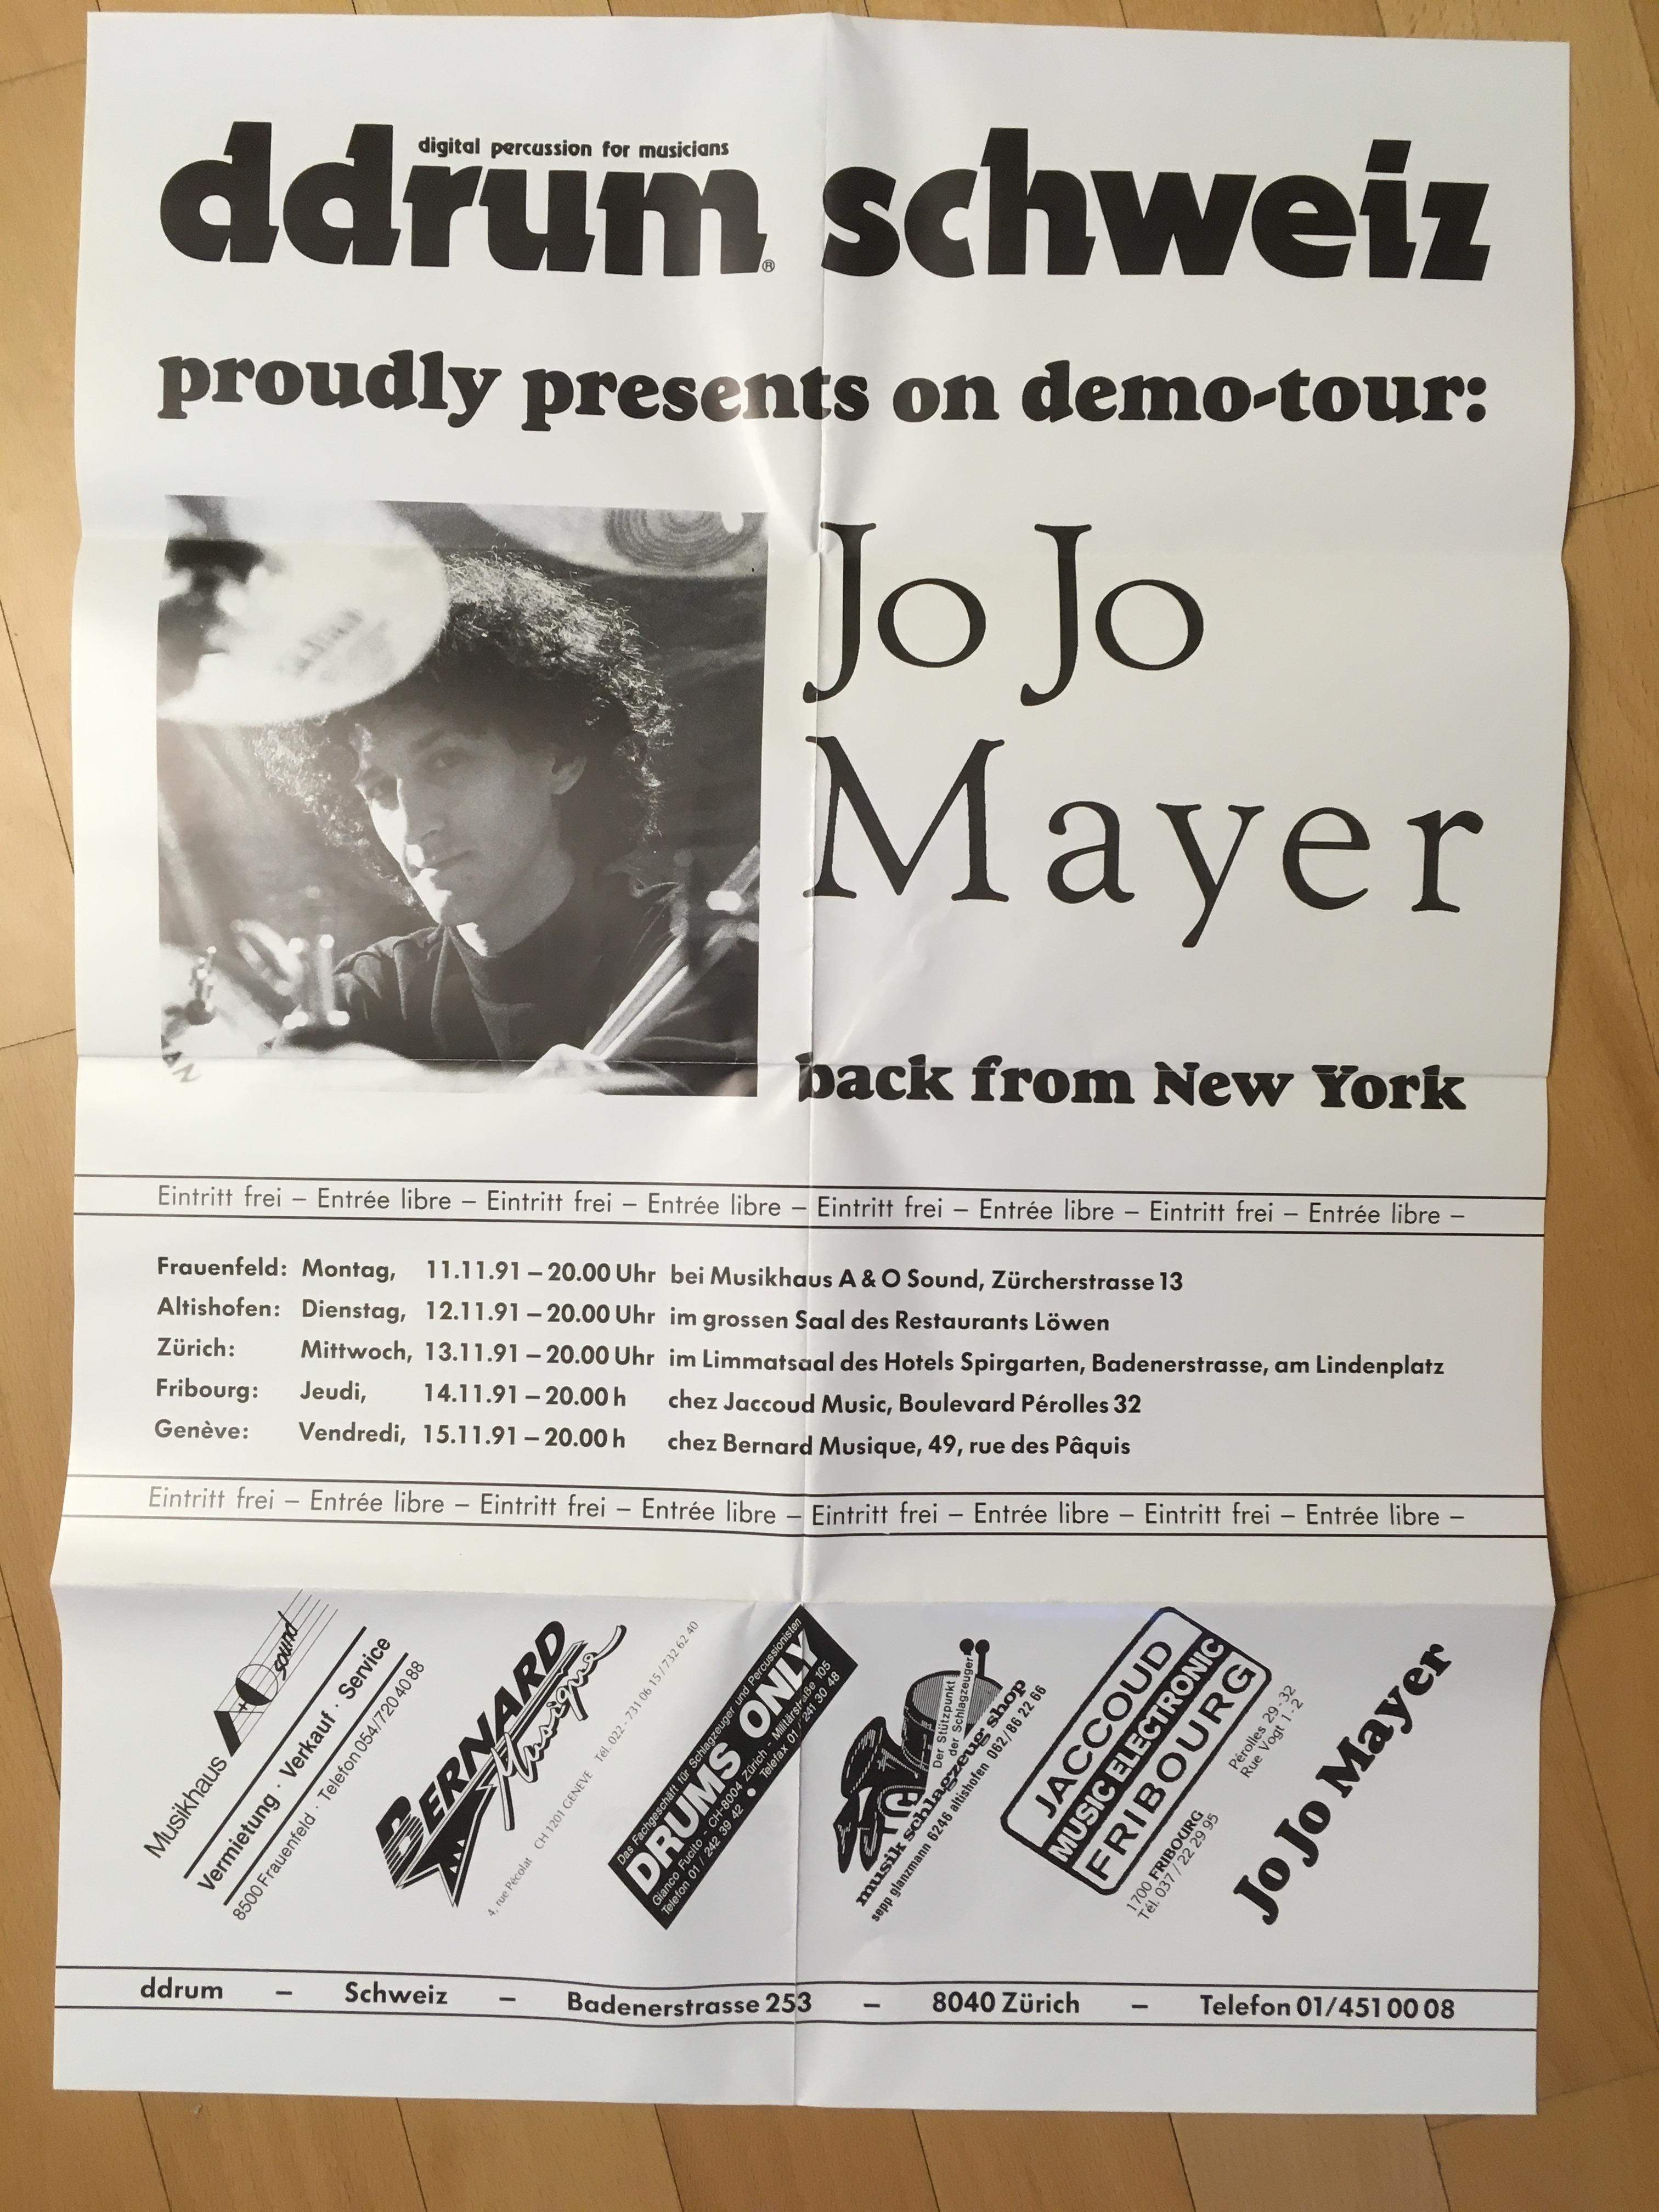 Foto-poster-ddrum-schweiz-demo-tour-Jojo-Mayer